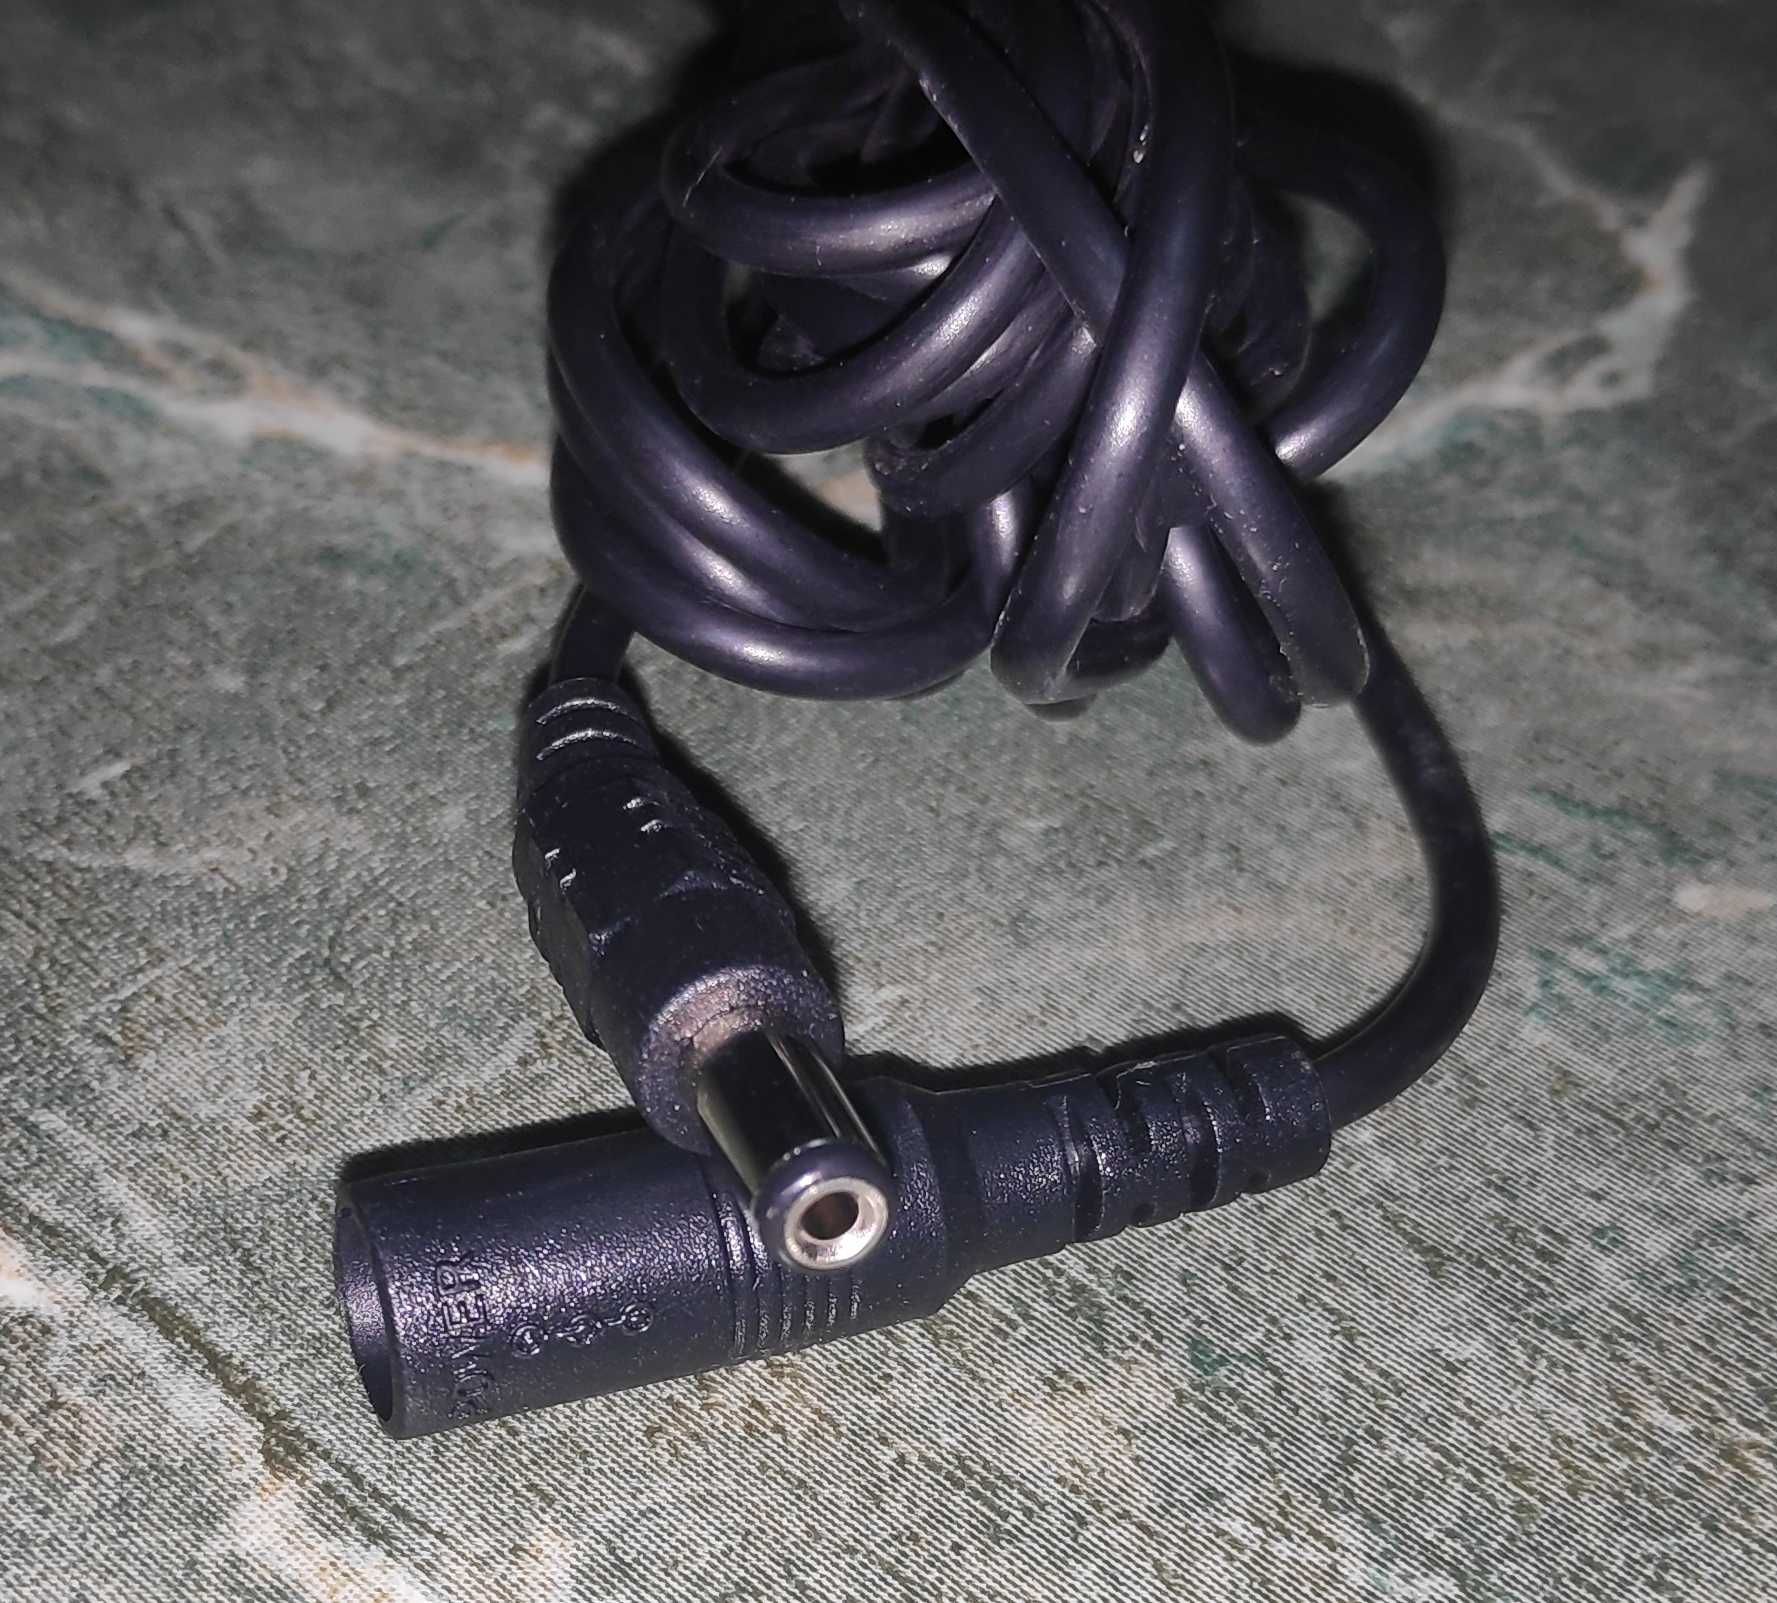 5-метровый кабель, шнур, провод питания приборов. DC. Диаметр 5 мм.